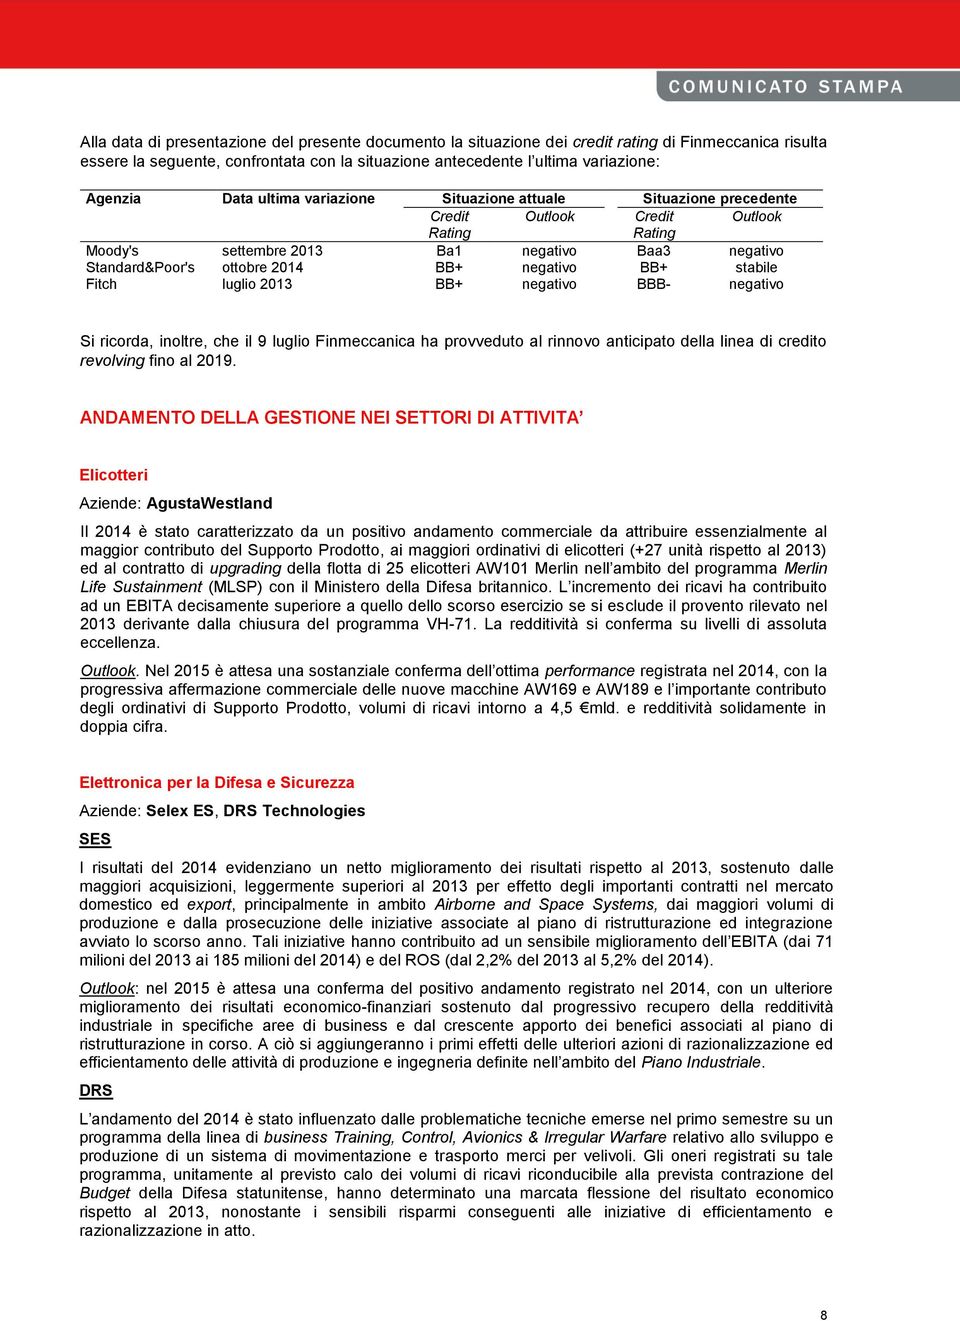 BB+ stabile Fitch luglio 2013 BB+ negativo BBB- negativo Si ricorda, inoltre, che il 9 luglio Finmeccanica ha provveduto al rinnovo anticipato della linea di credito revolving fino al 2019.